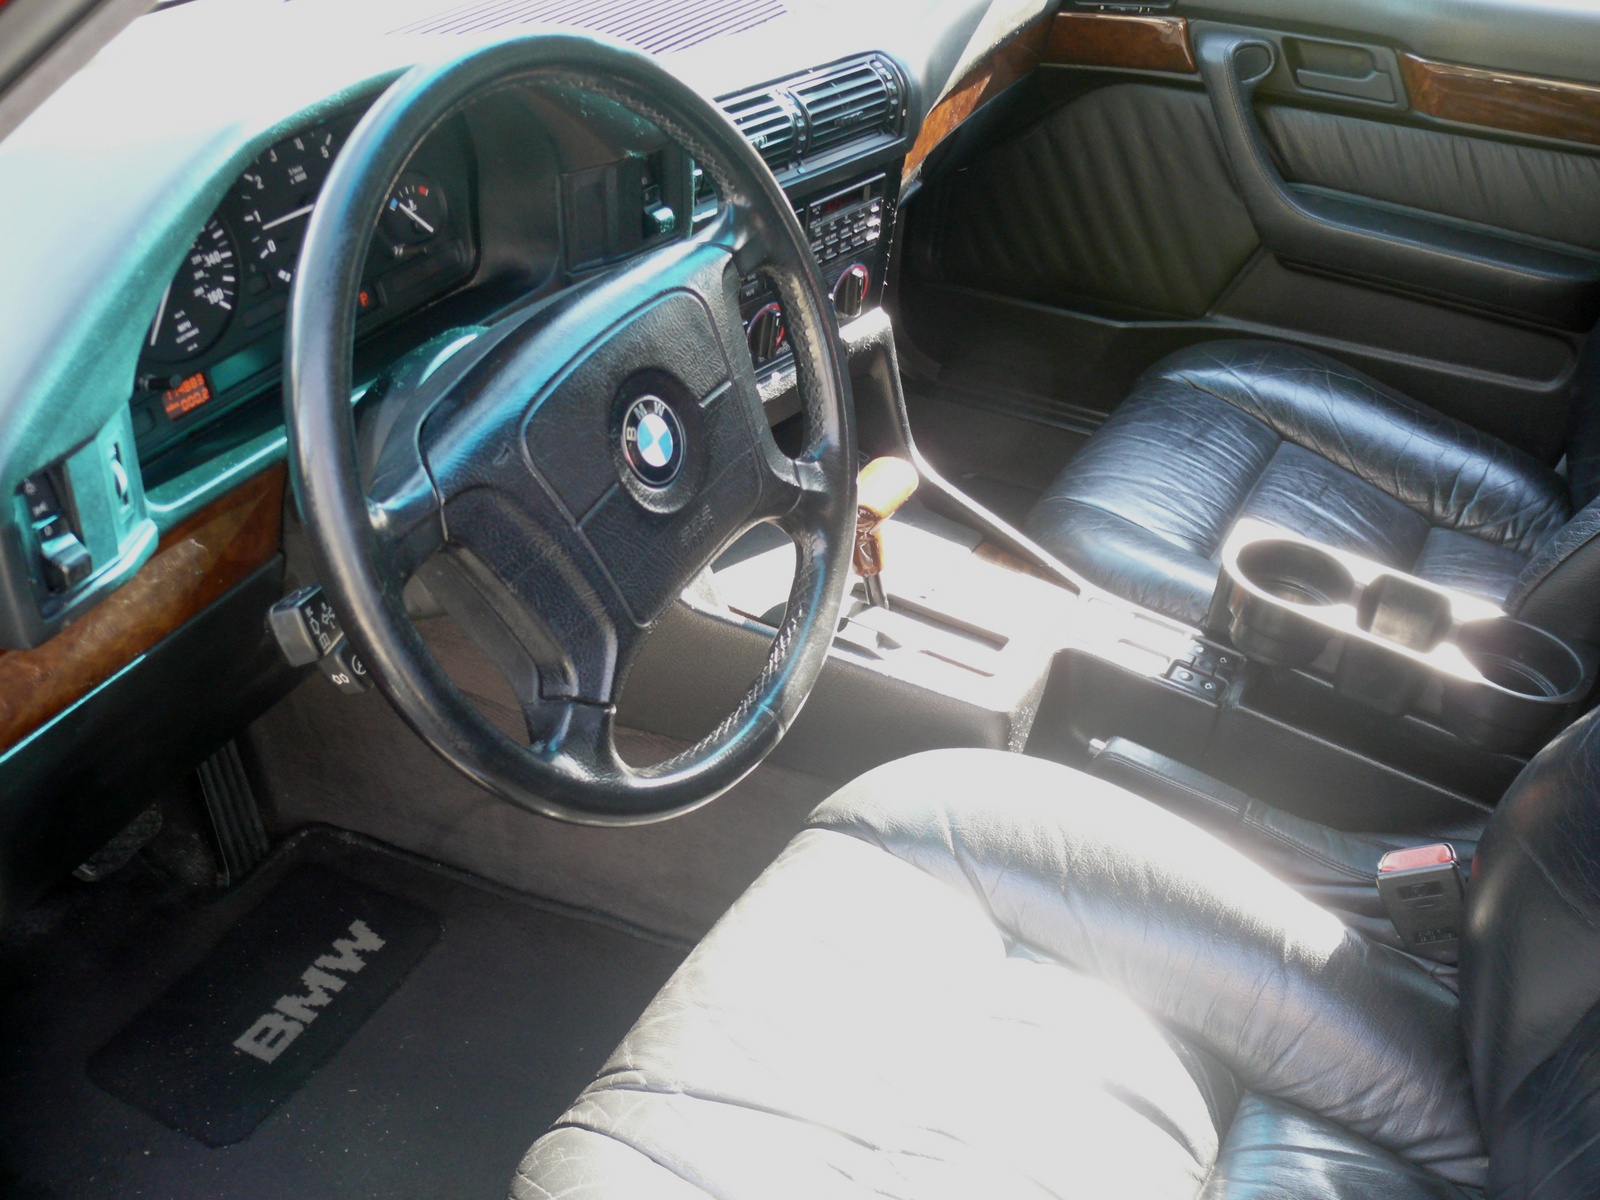 1995 Bmw 525i interior #4